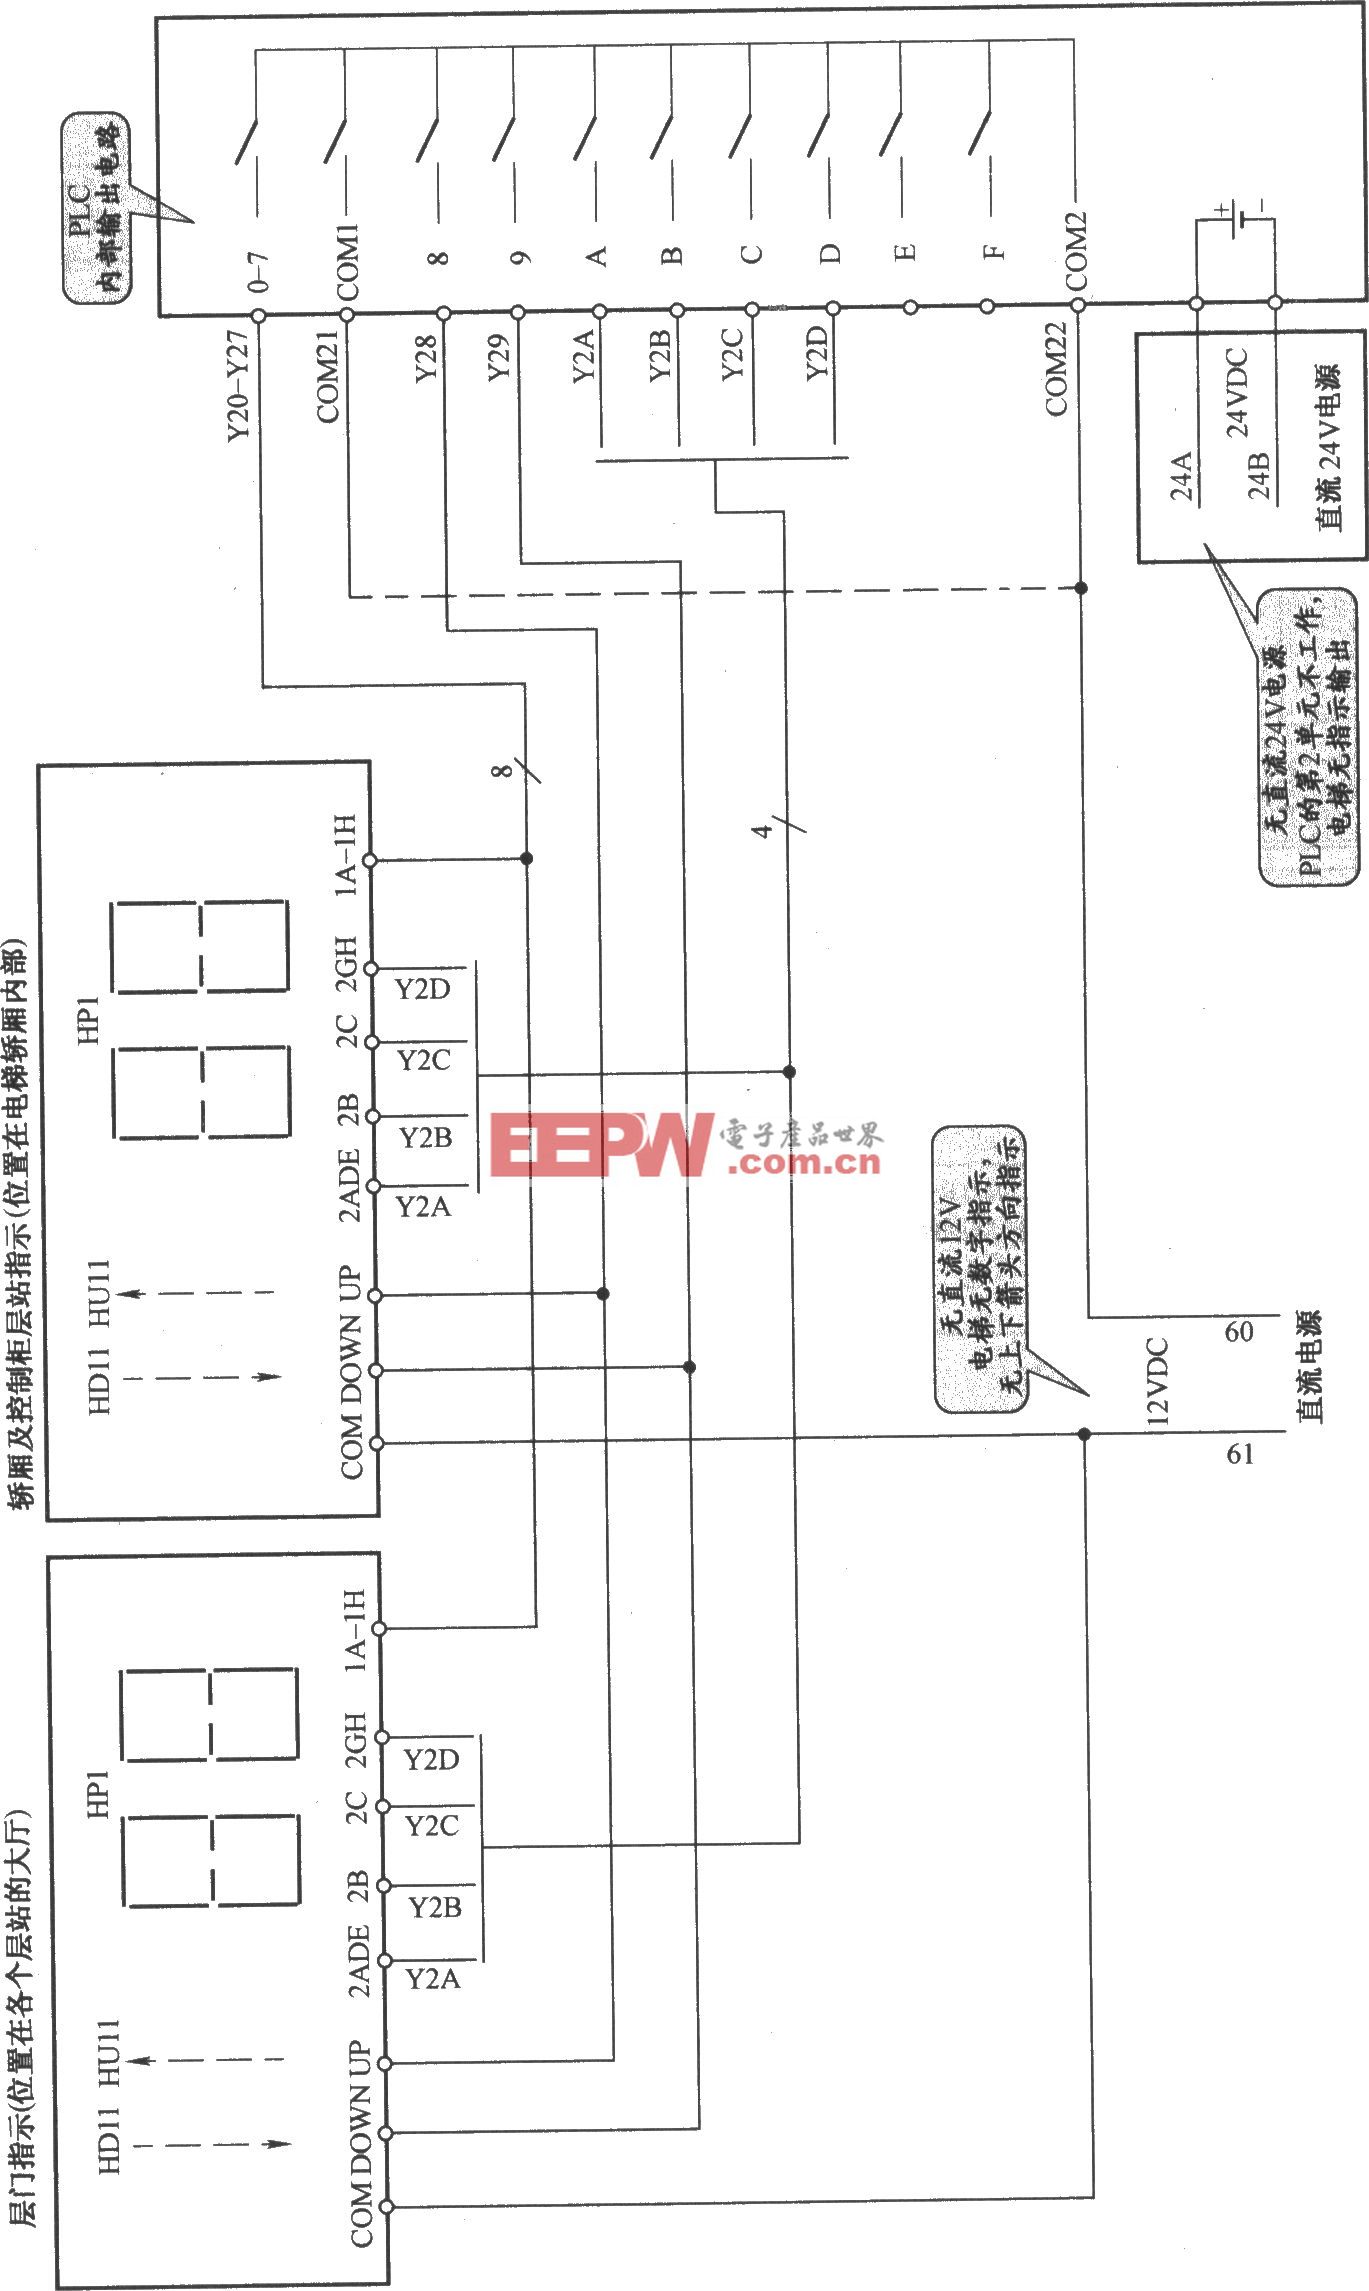 三菱SPVV(A)电梯楼层指示电路